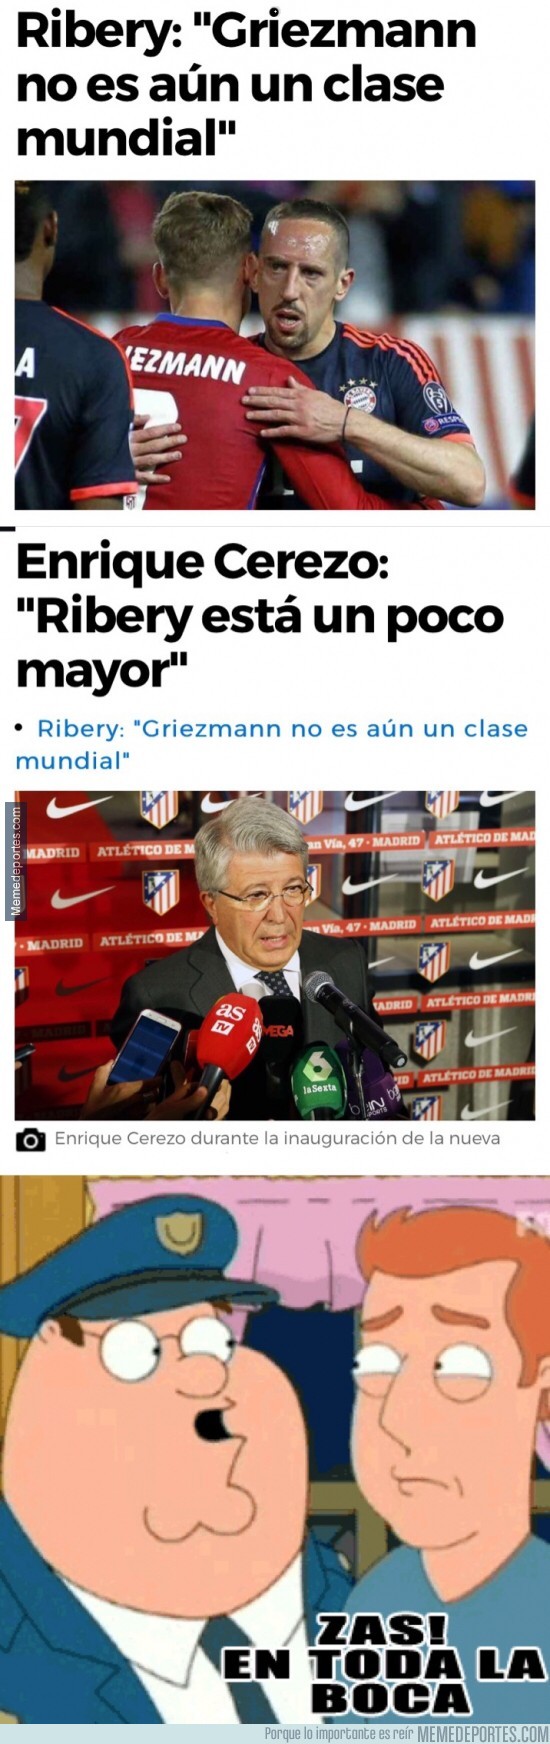 916113 - Las palabras de Ribery rajando de Griezmann han tenido la respuesta de Cerezo